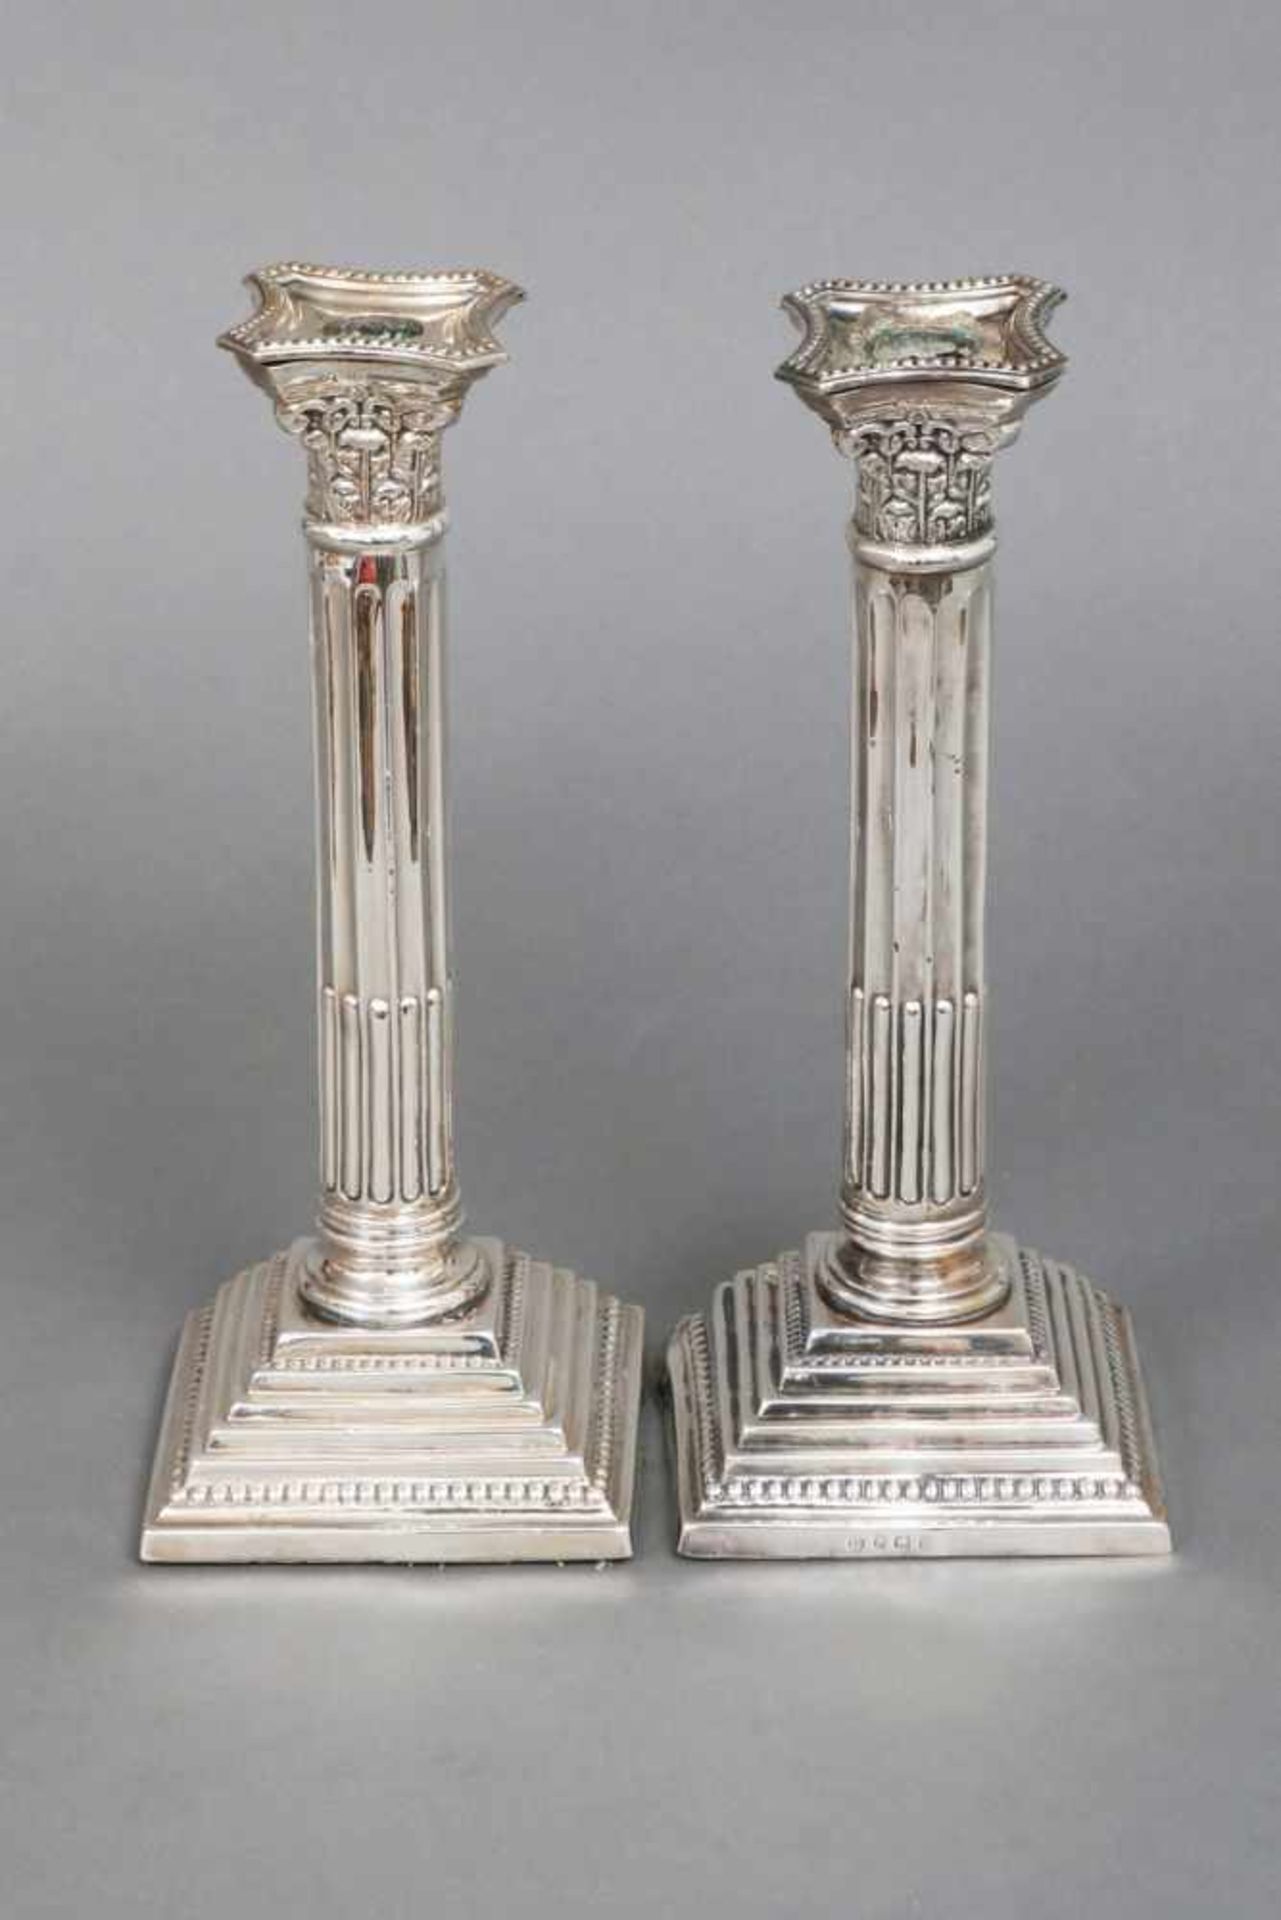 Paar LeuchterSterling Silber, Birmingham, 1911, korinthische Säulen auf getrepptem Stand, je eine